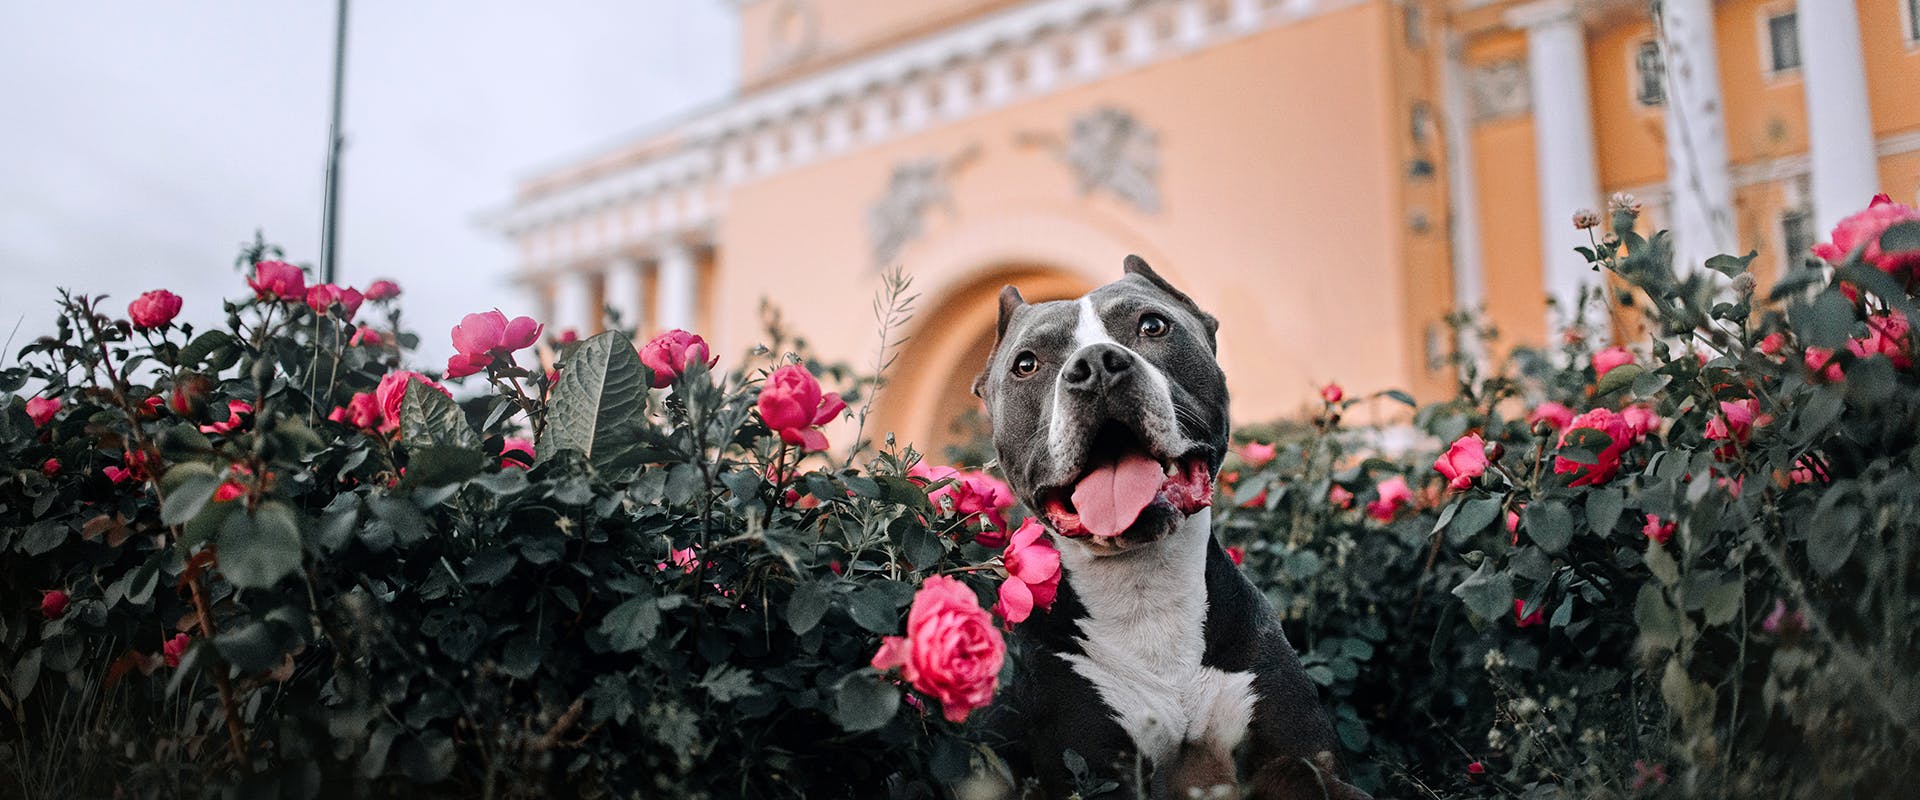 A dog sitting in a rose bush